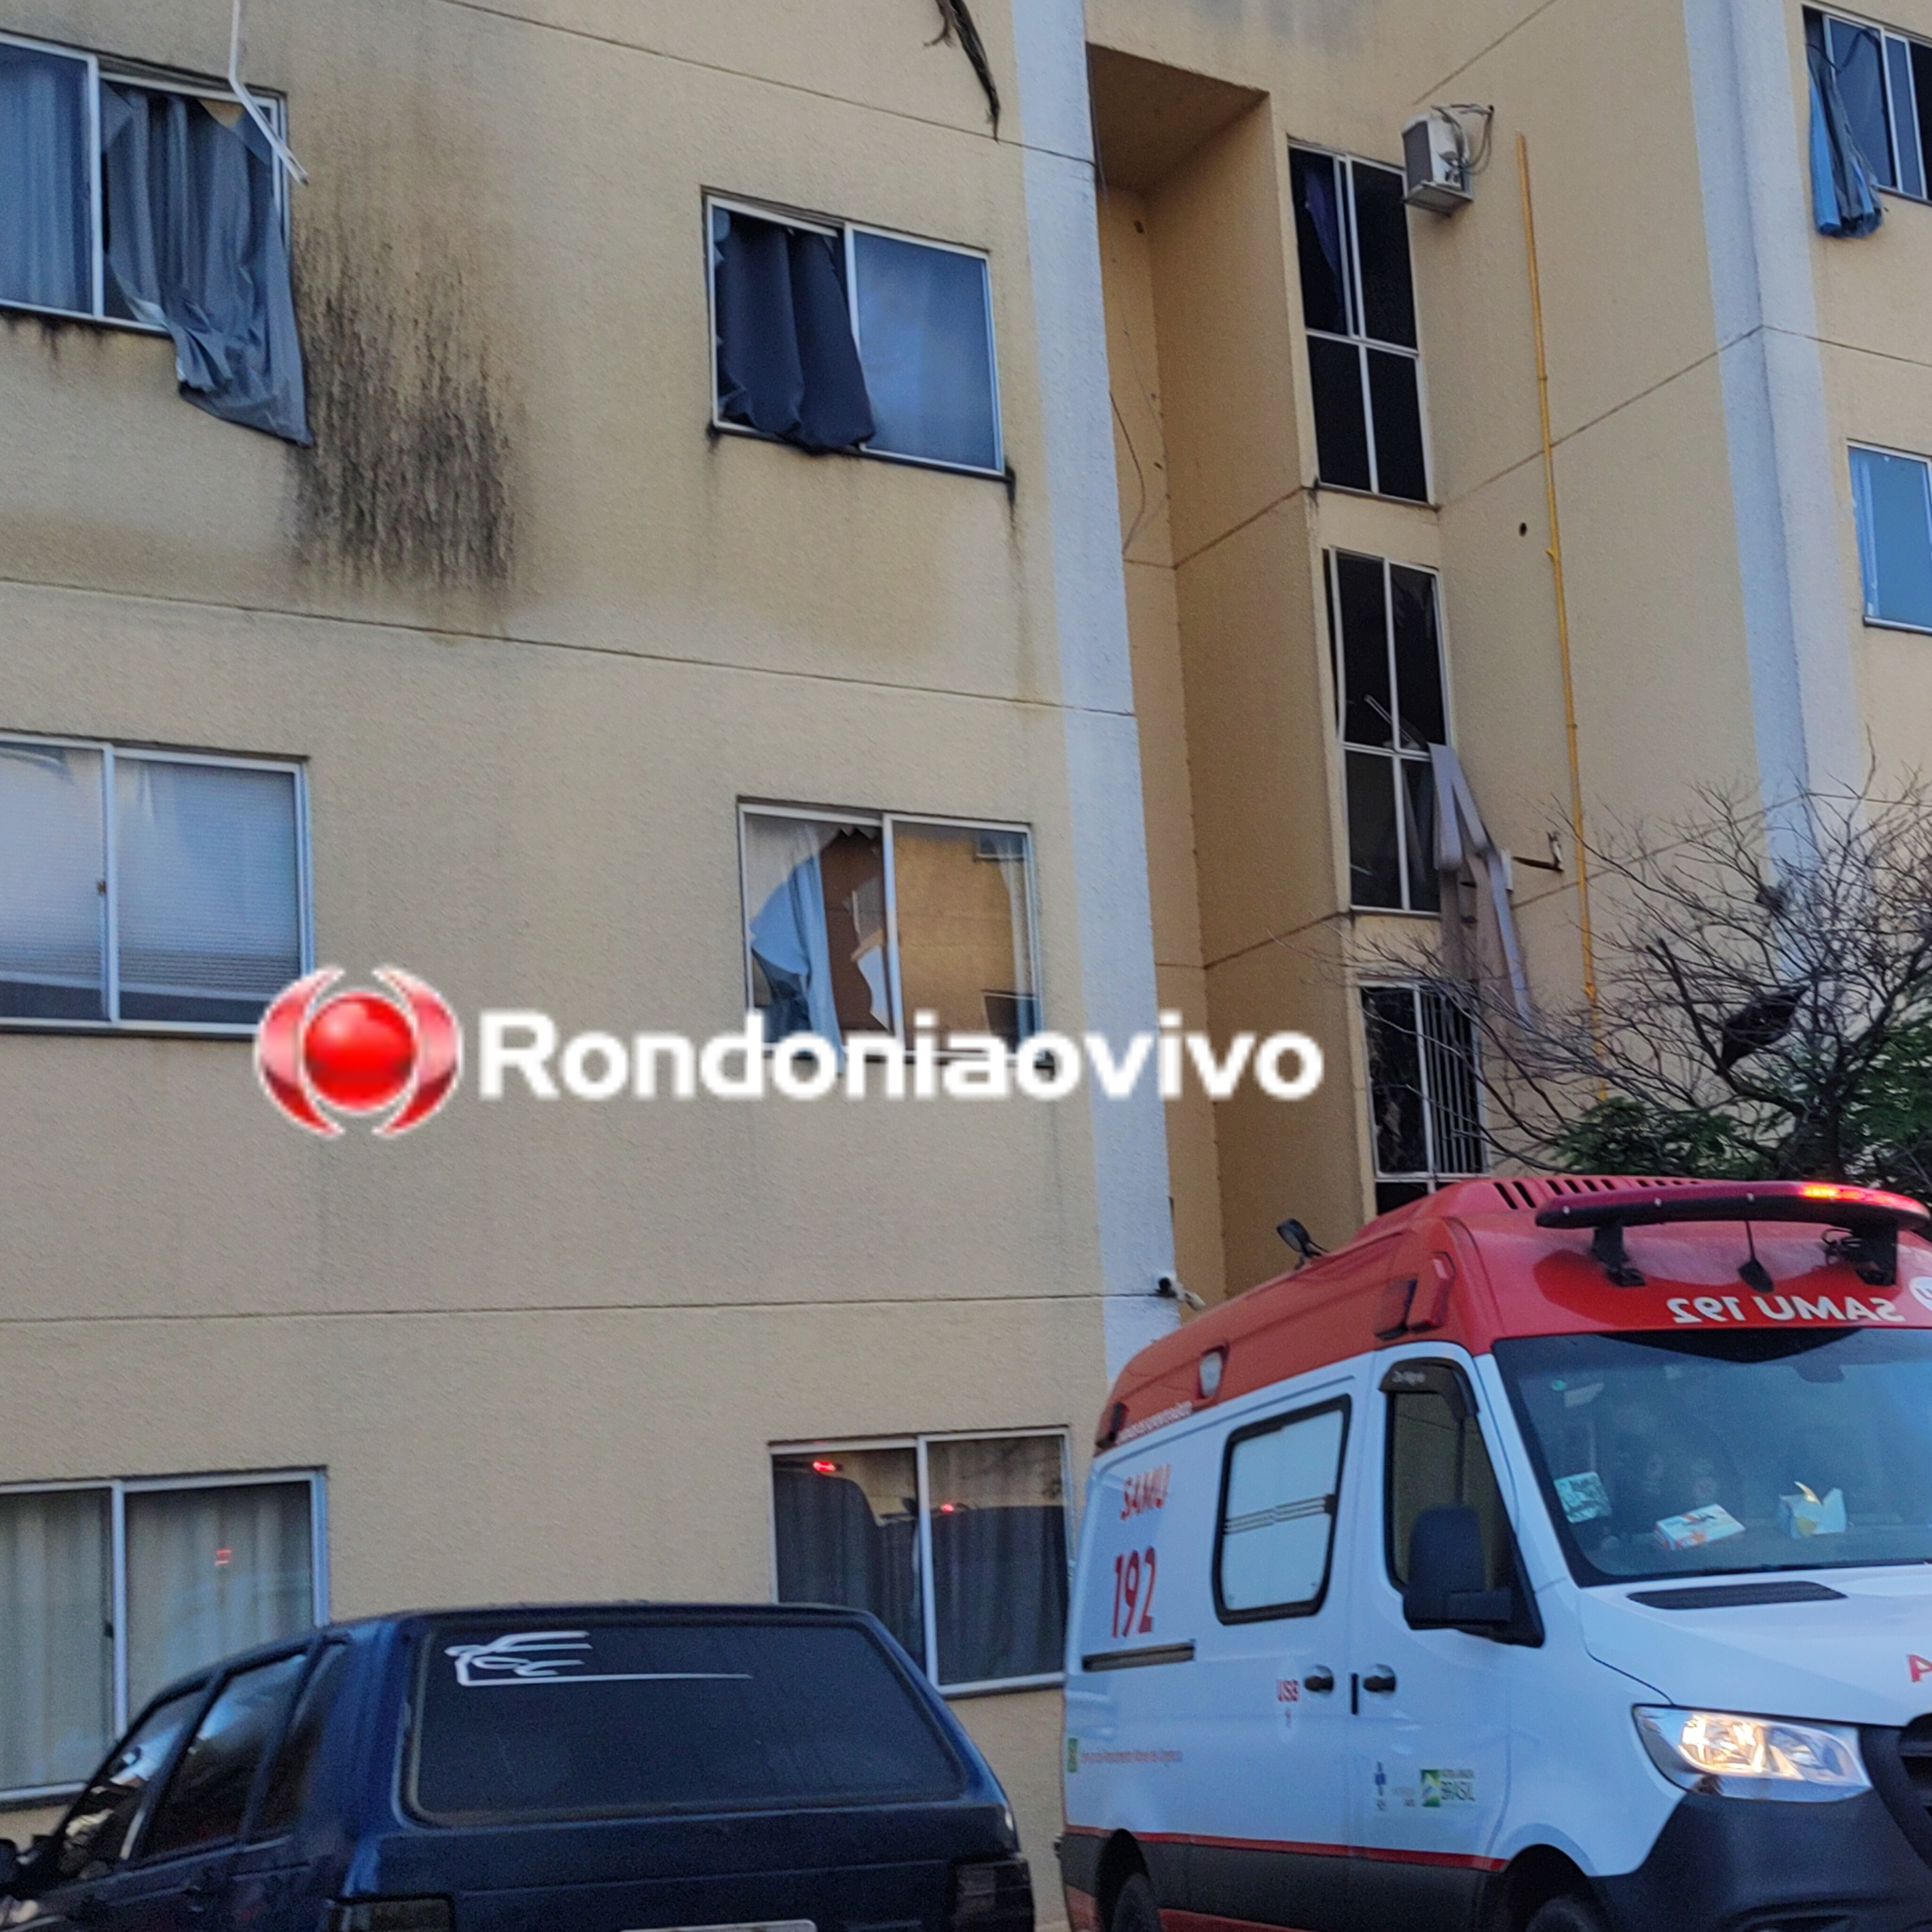 URGENTE: Explosão em apartamento deixa duas pessoas em estado grave 